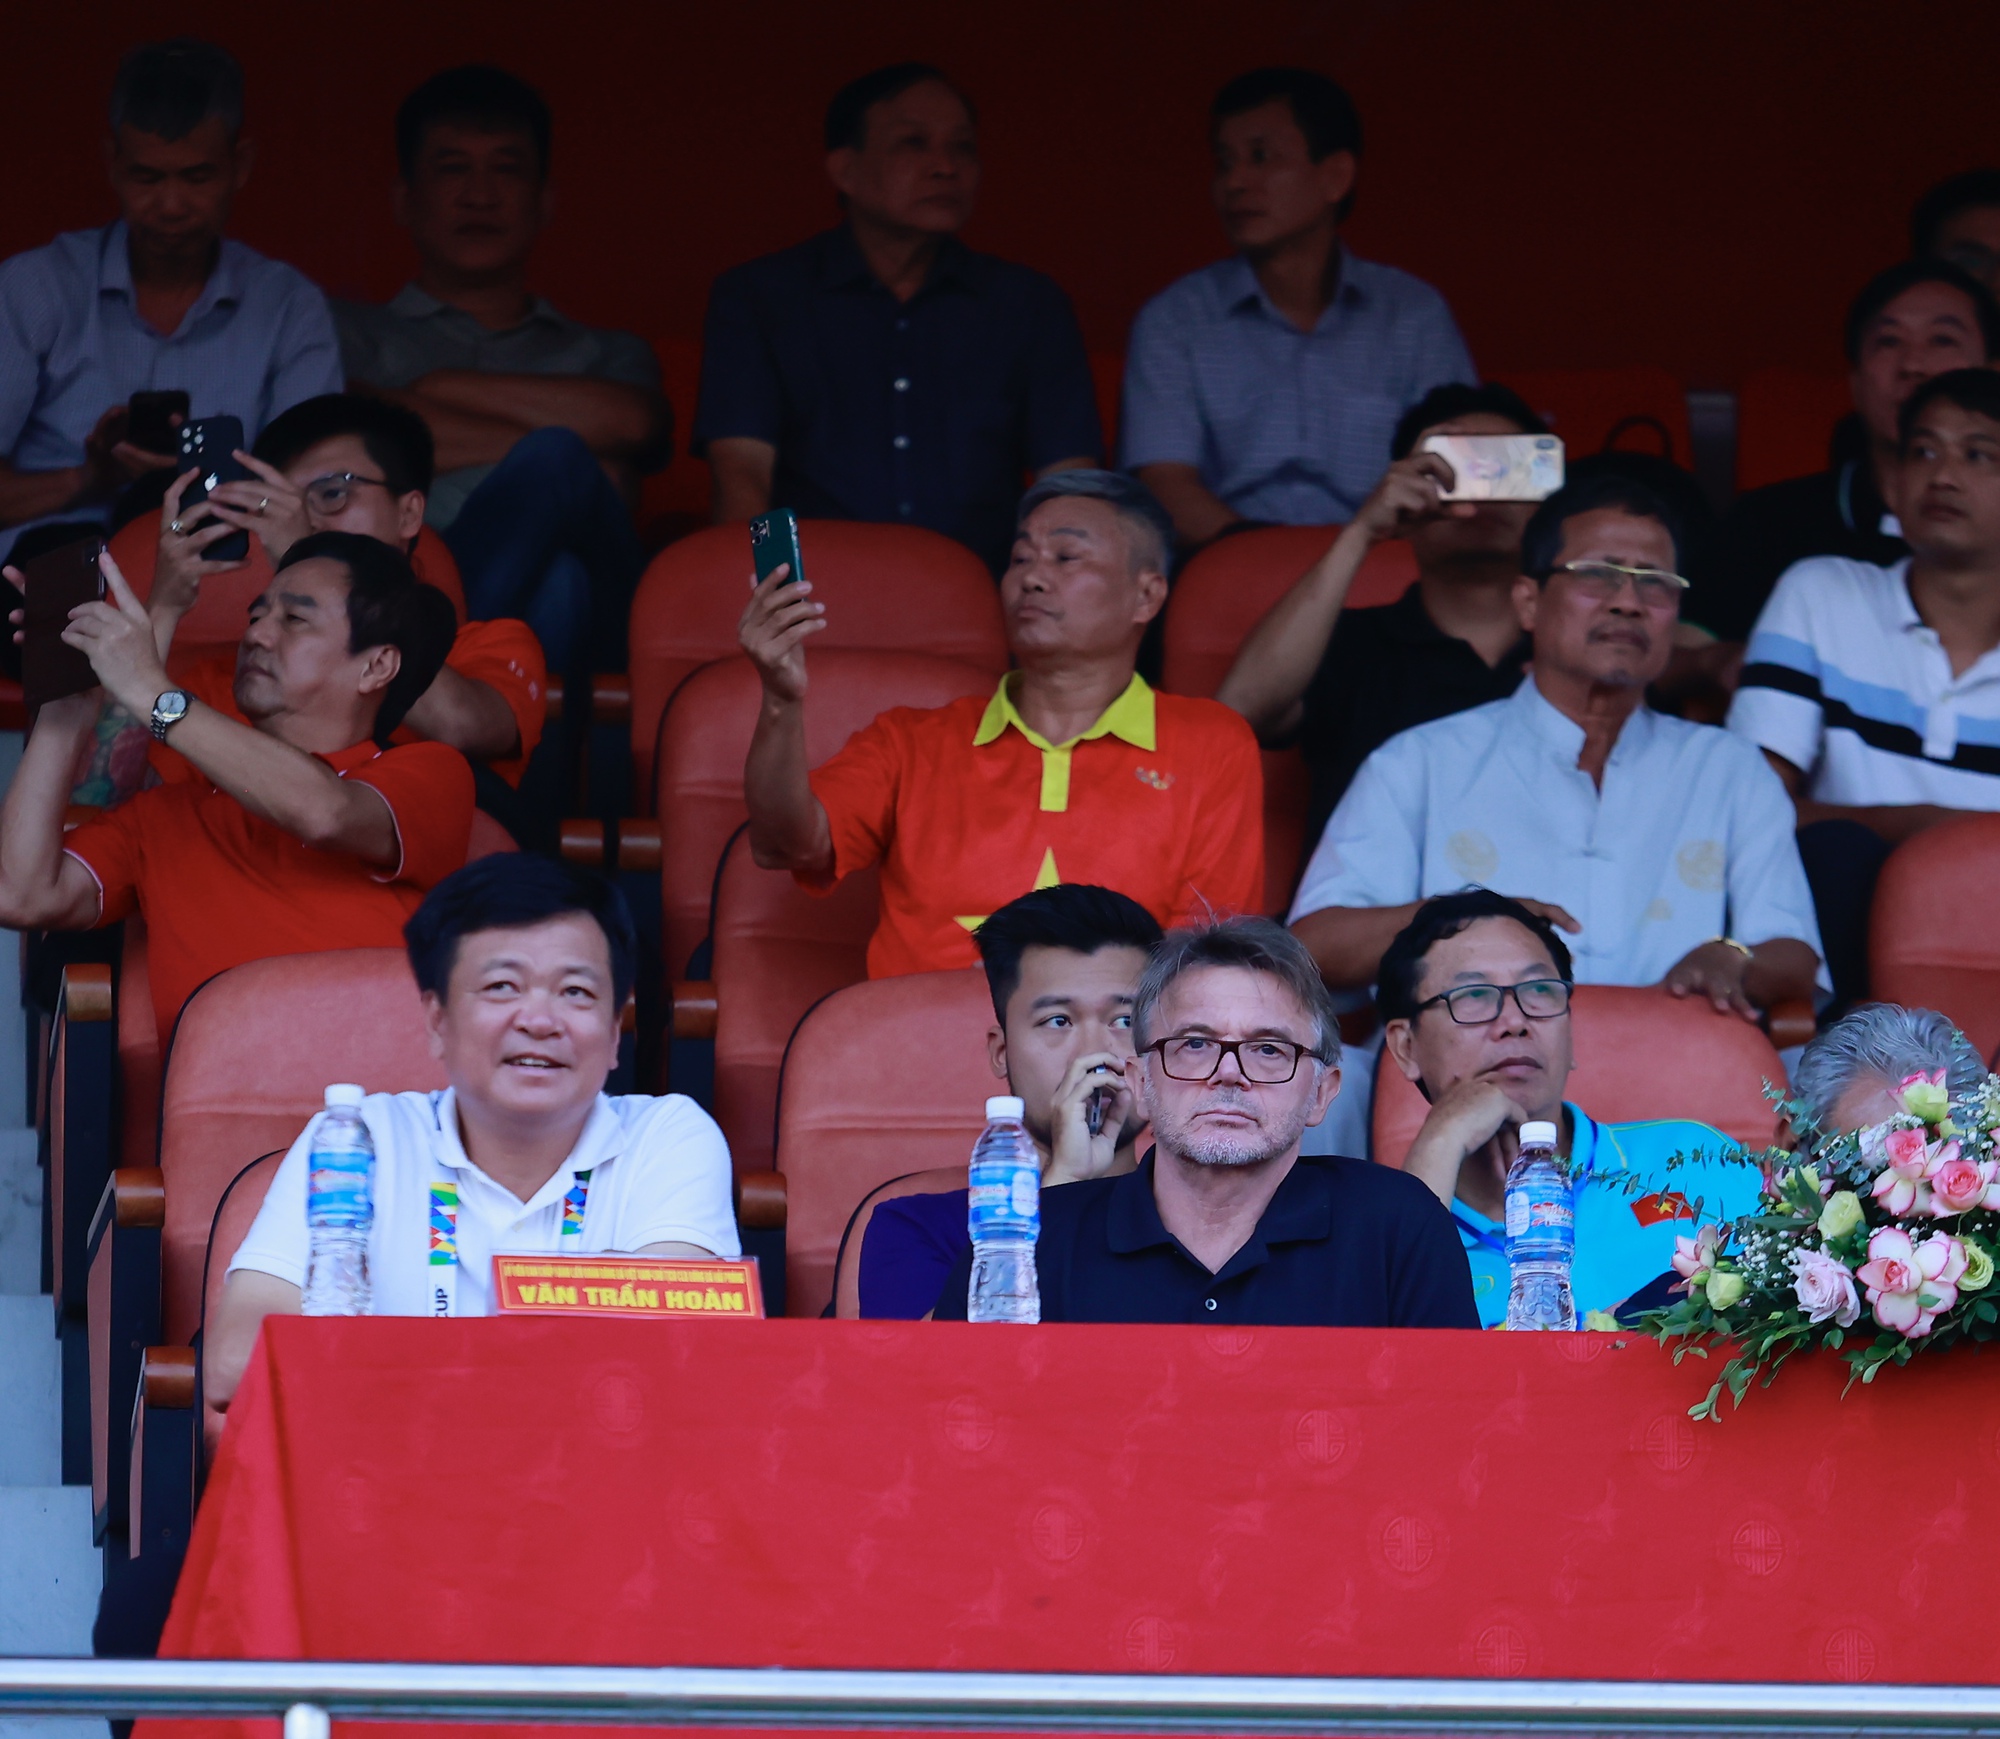 HLV Troussier xuất hiện ngồi cùng bầu Hoàn trong ngày chiến thắng của Hải Phòng FC - Ảnh 5.